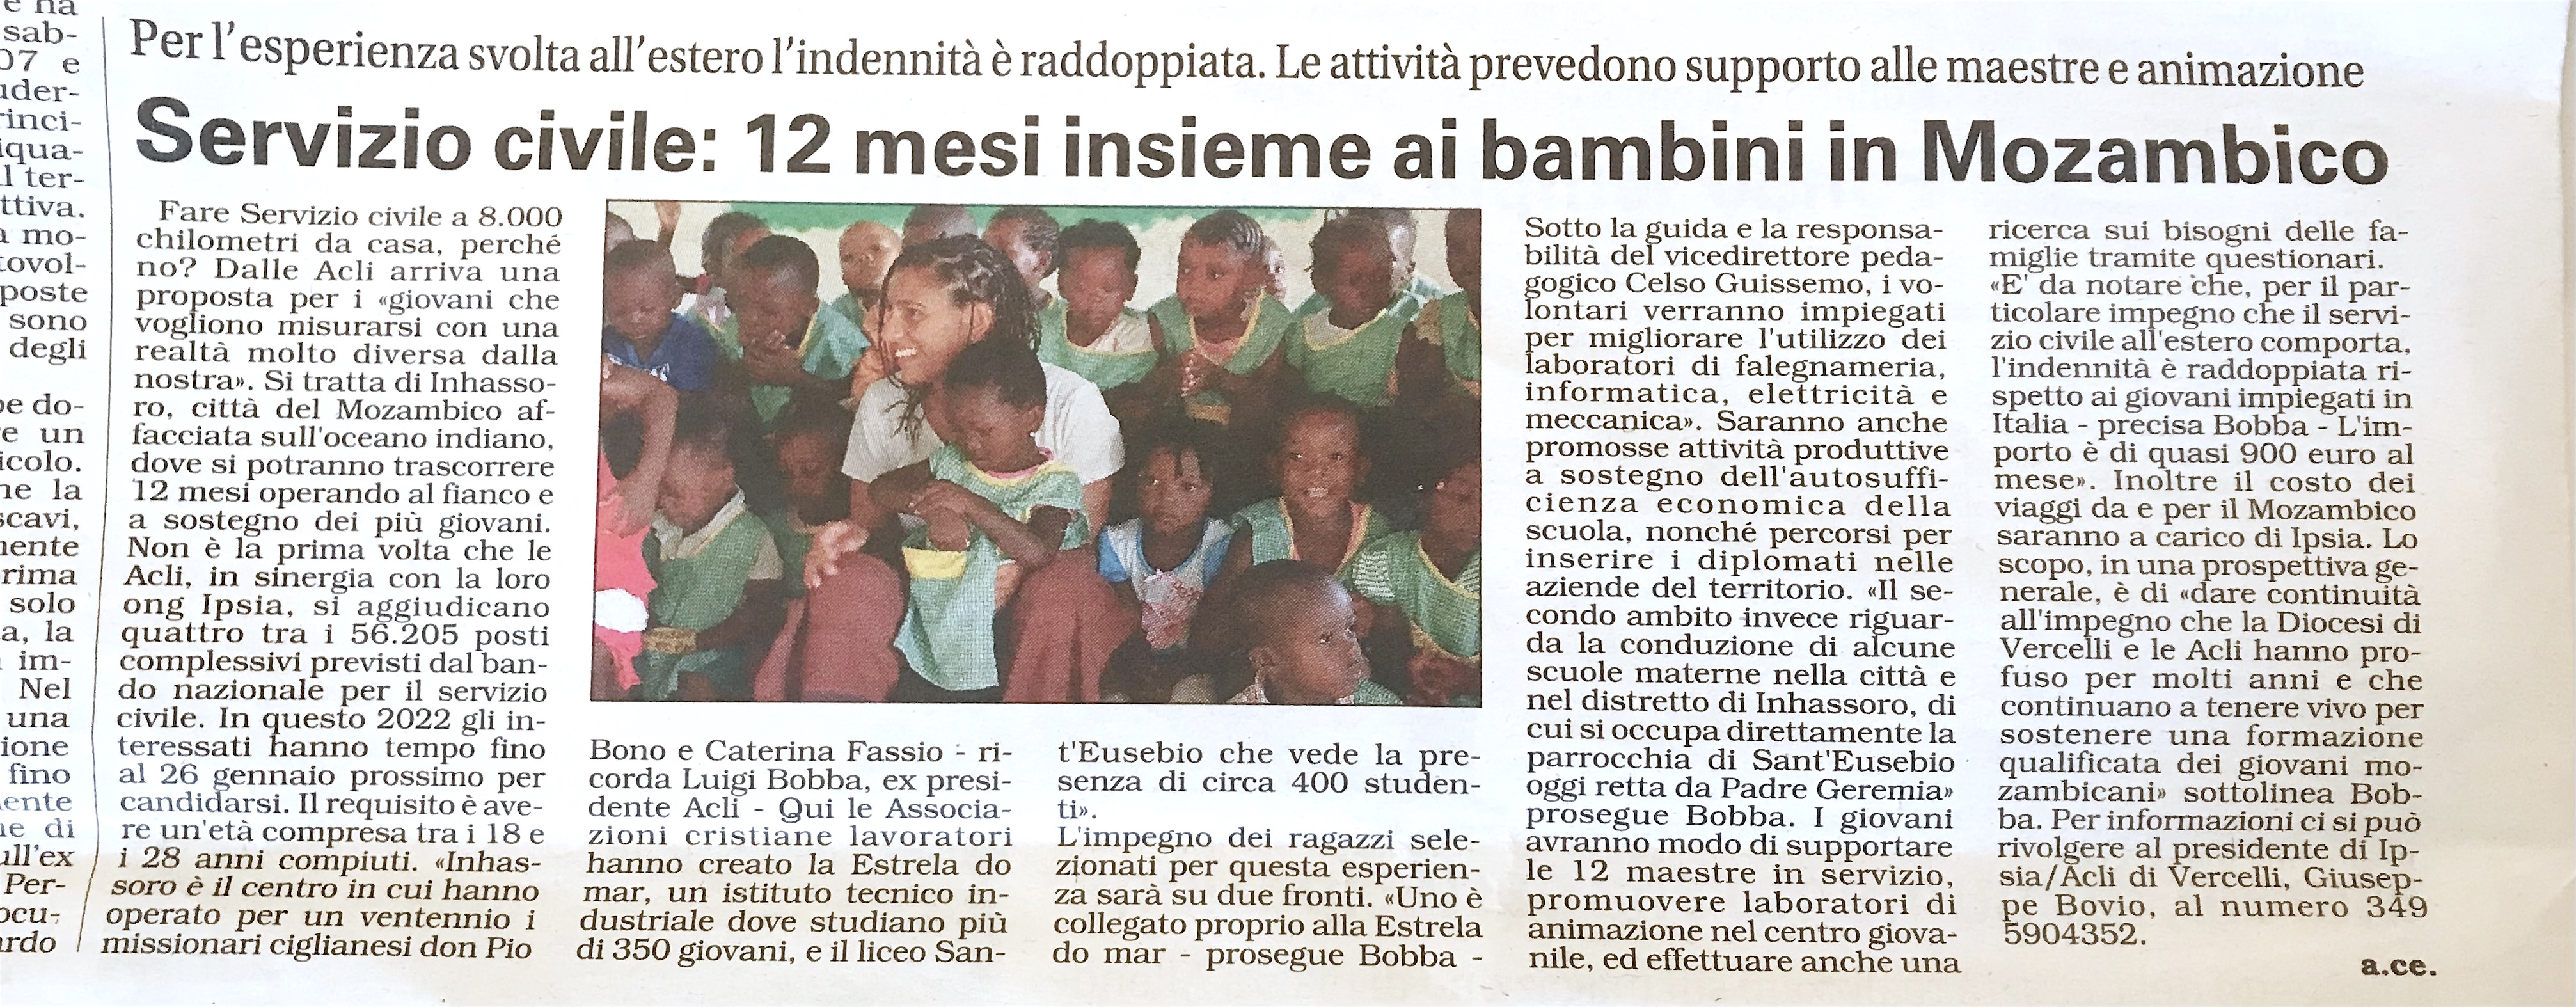 Servizio civile: 12 mesi insieme ai bambini in Mozambico